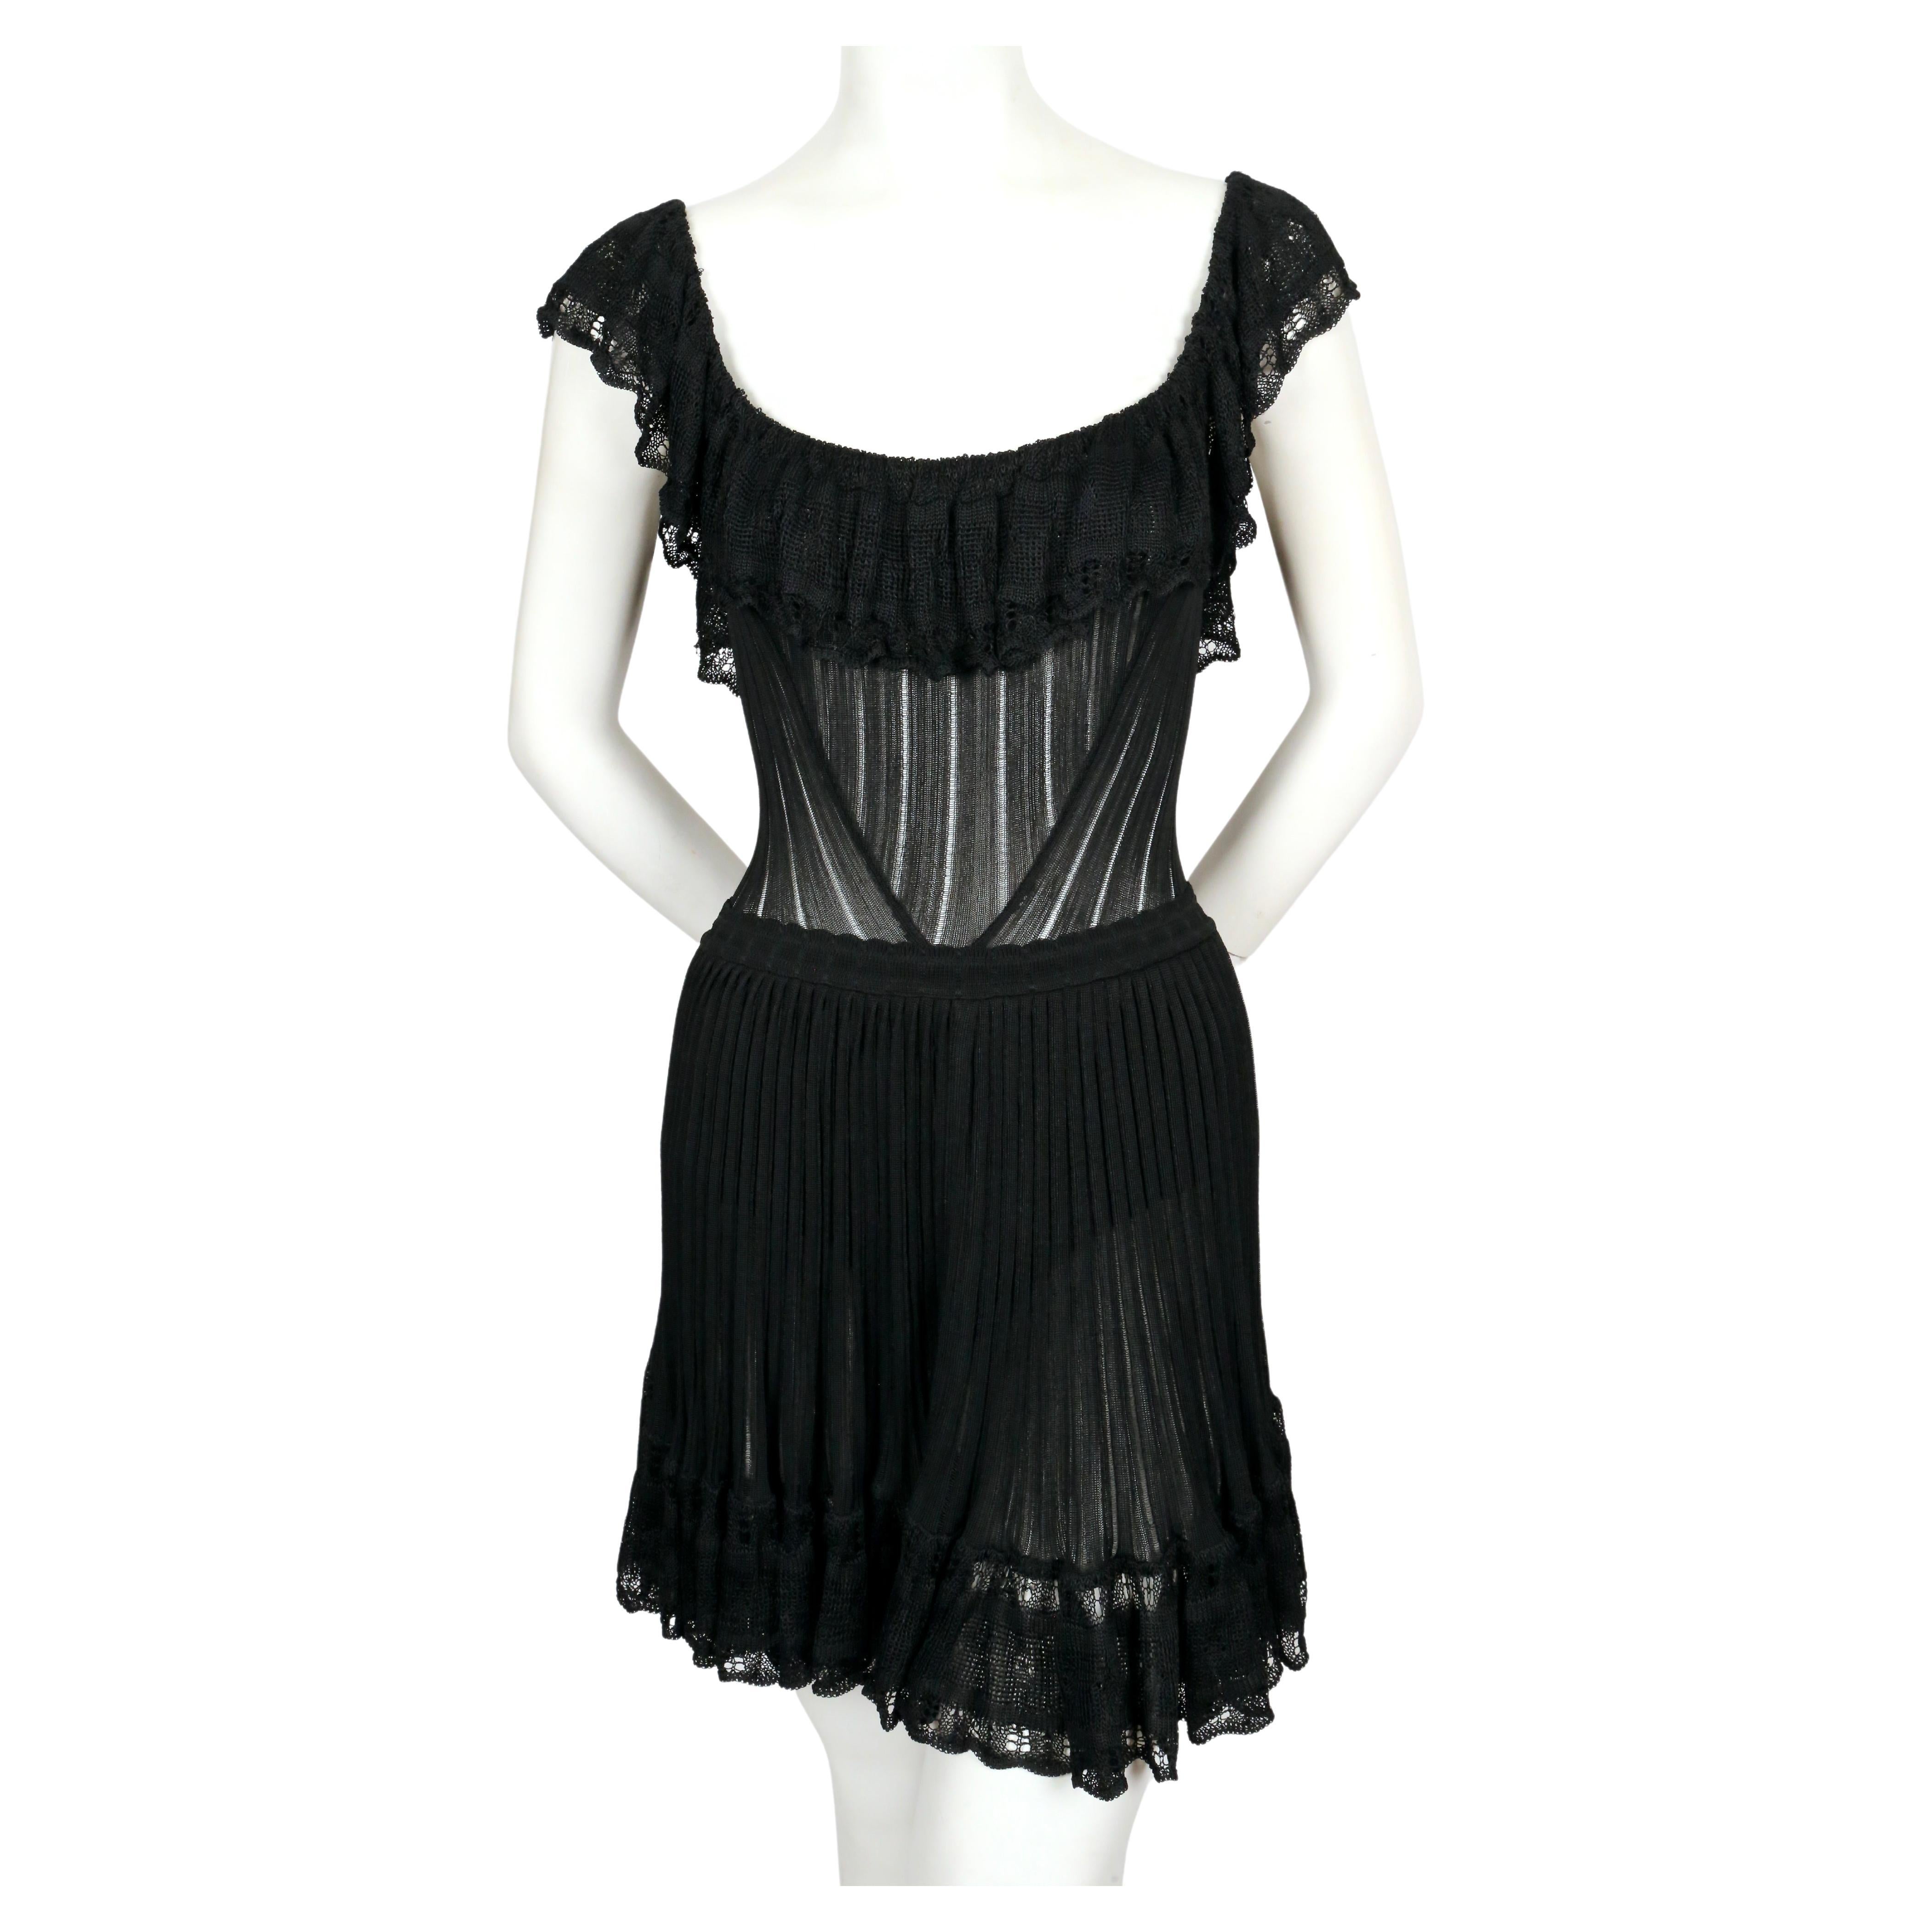 Sehr seltenes, tiefschwarzes, halbtransparentes Kleid mit gerafftem Pointelle-Besatz und Bustle-Rücken von Azzedine Alaia aus dem Sommer 1992, genau wie auf dem Laufsteg gesehen. Das Kleid ist so konzipiert, dass der Volant die Büste bedeckt,